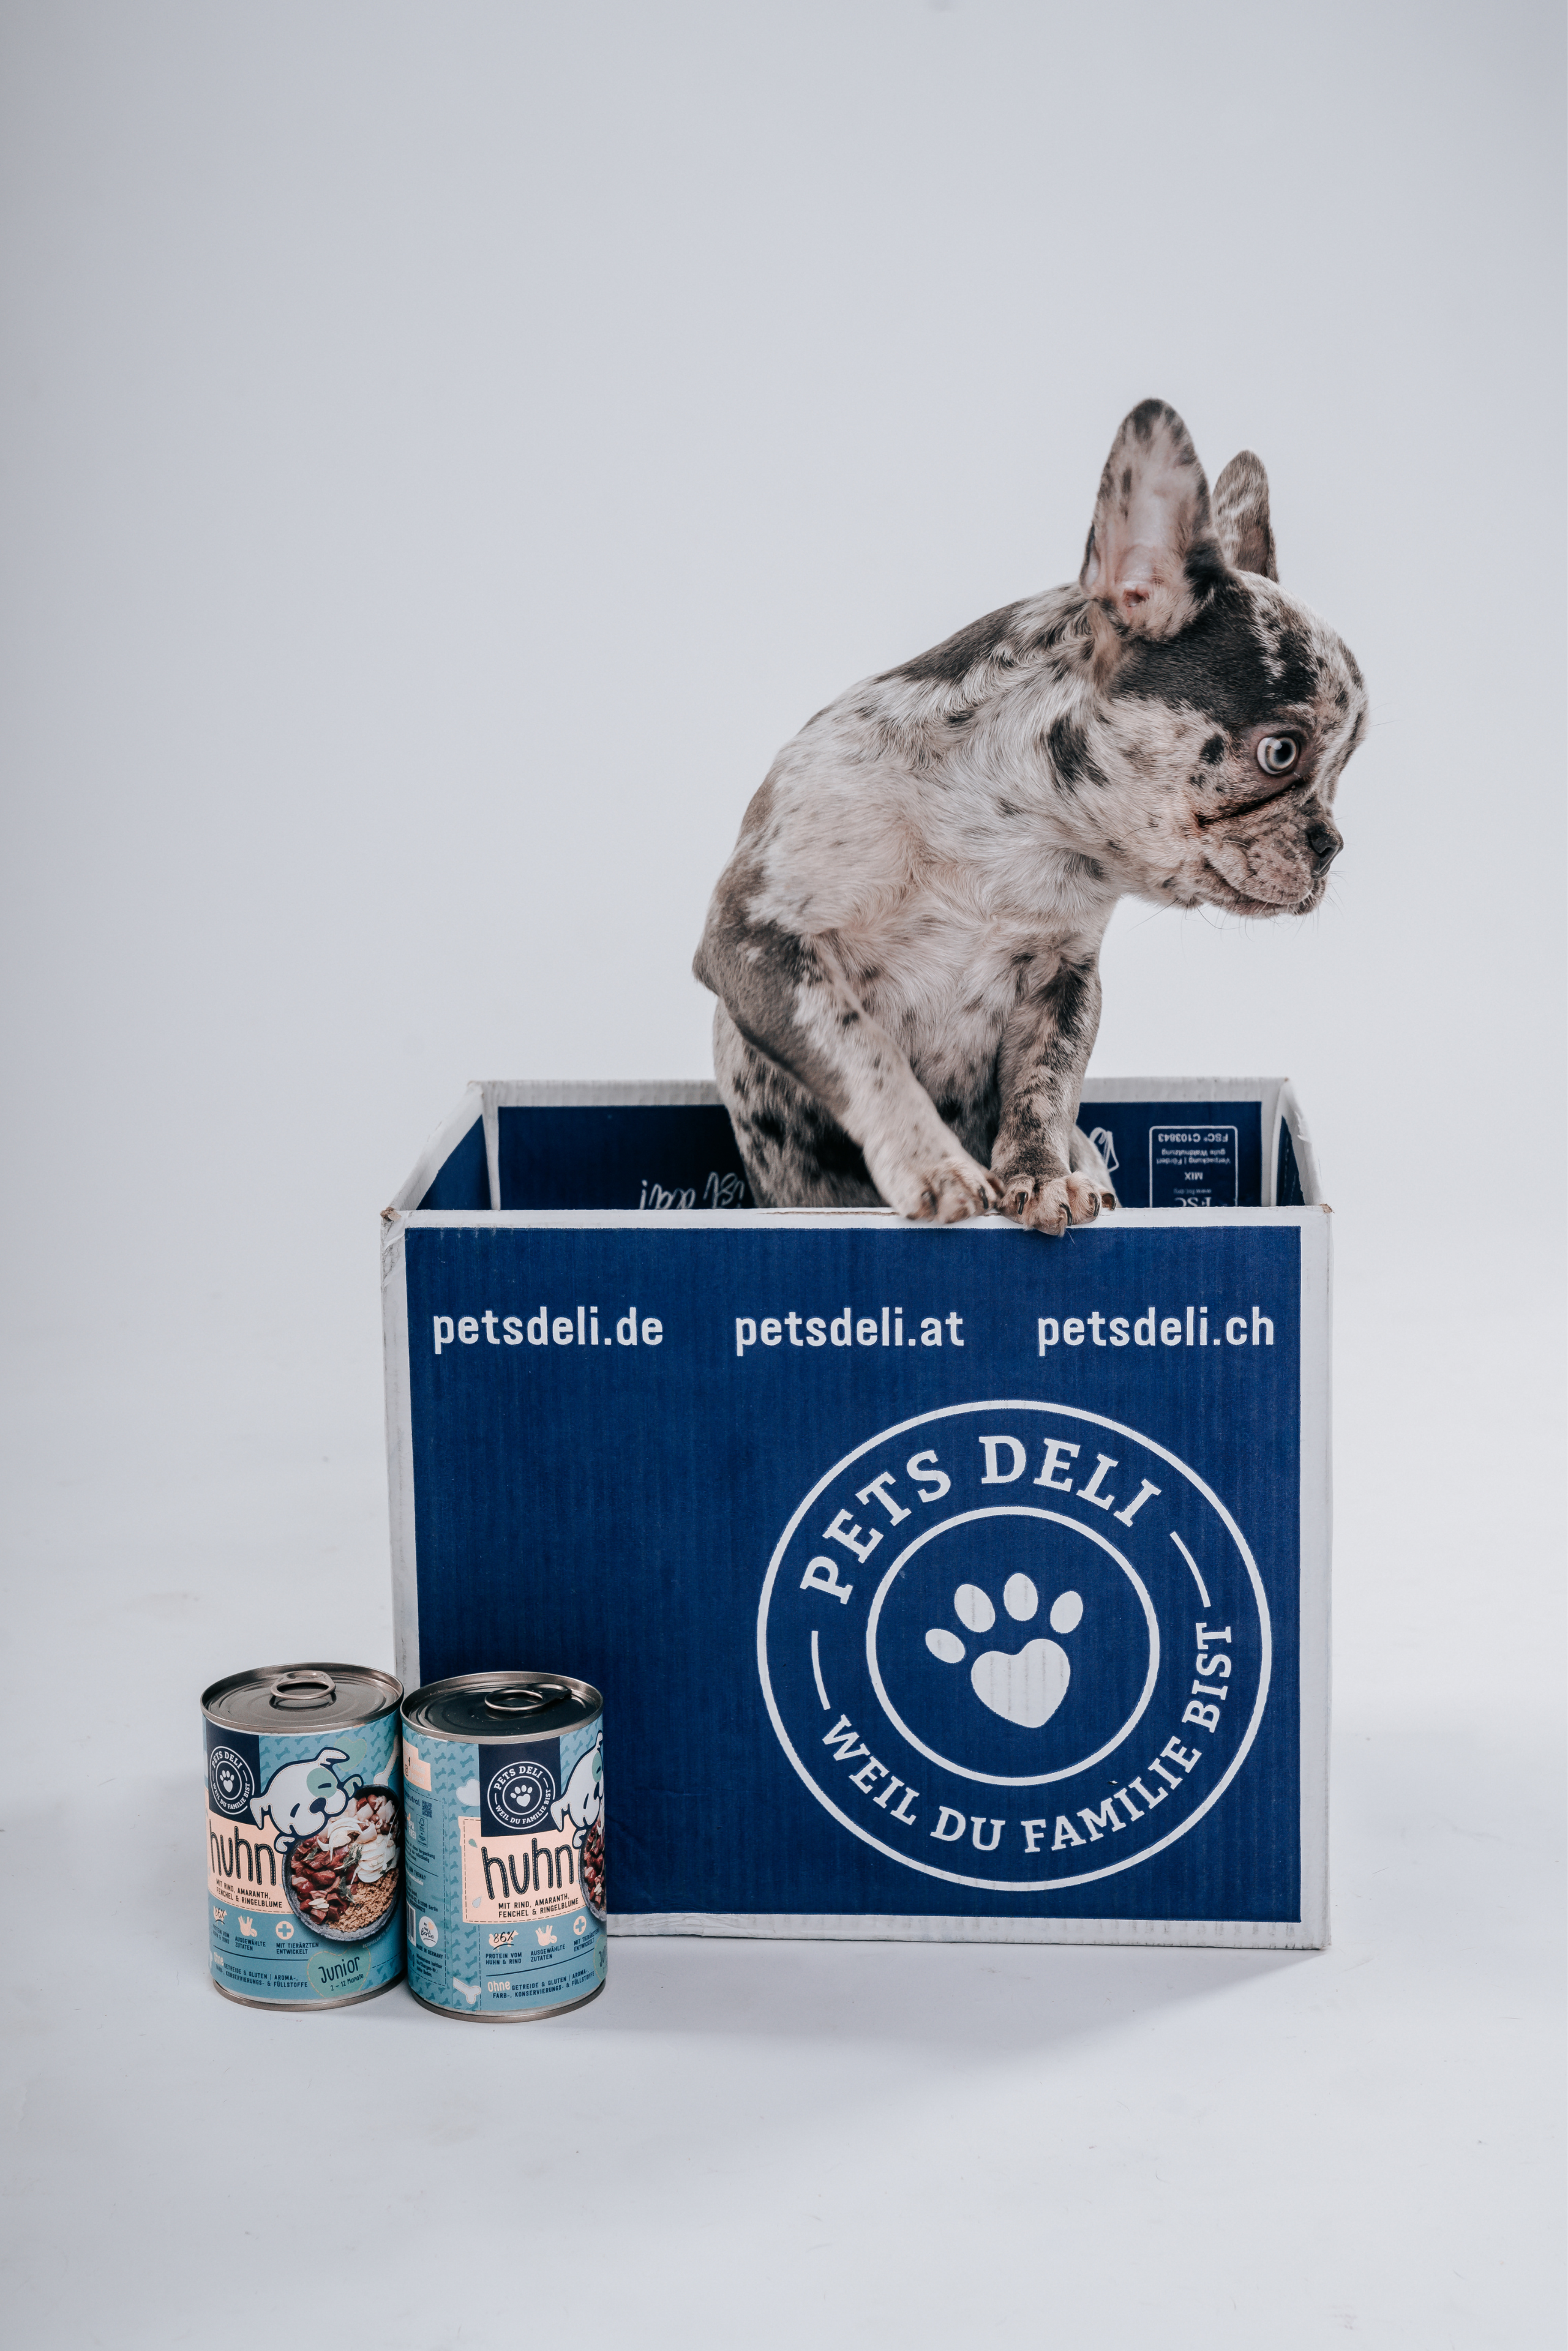 Pets Deli Hundefutter, das speziell entwickelt wurde, um die Ernährungsbedürfnisse von französischen Bulldoggen zu erfüllen